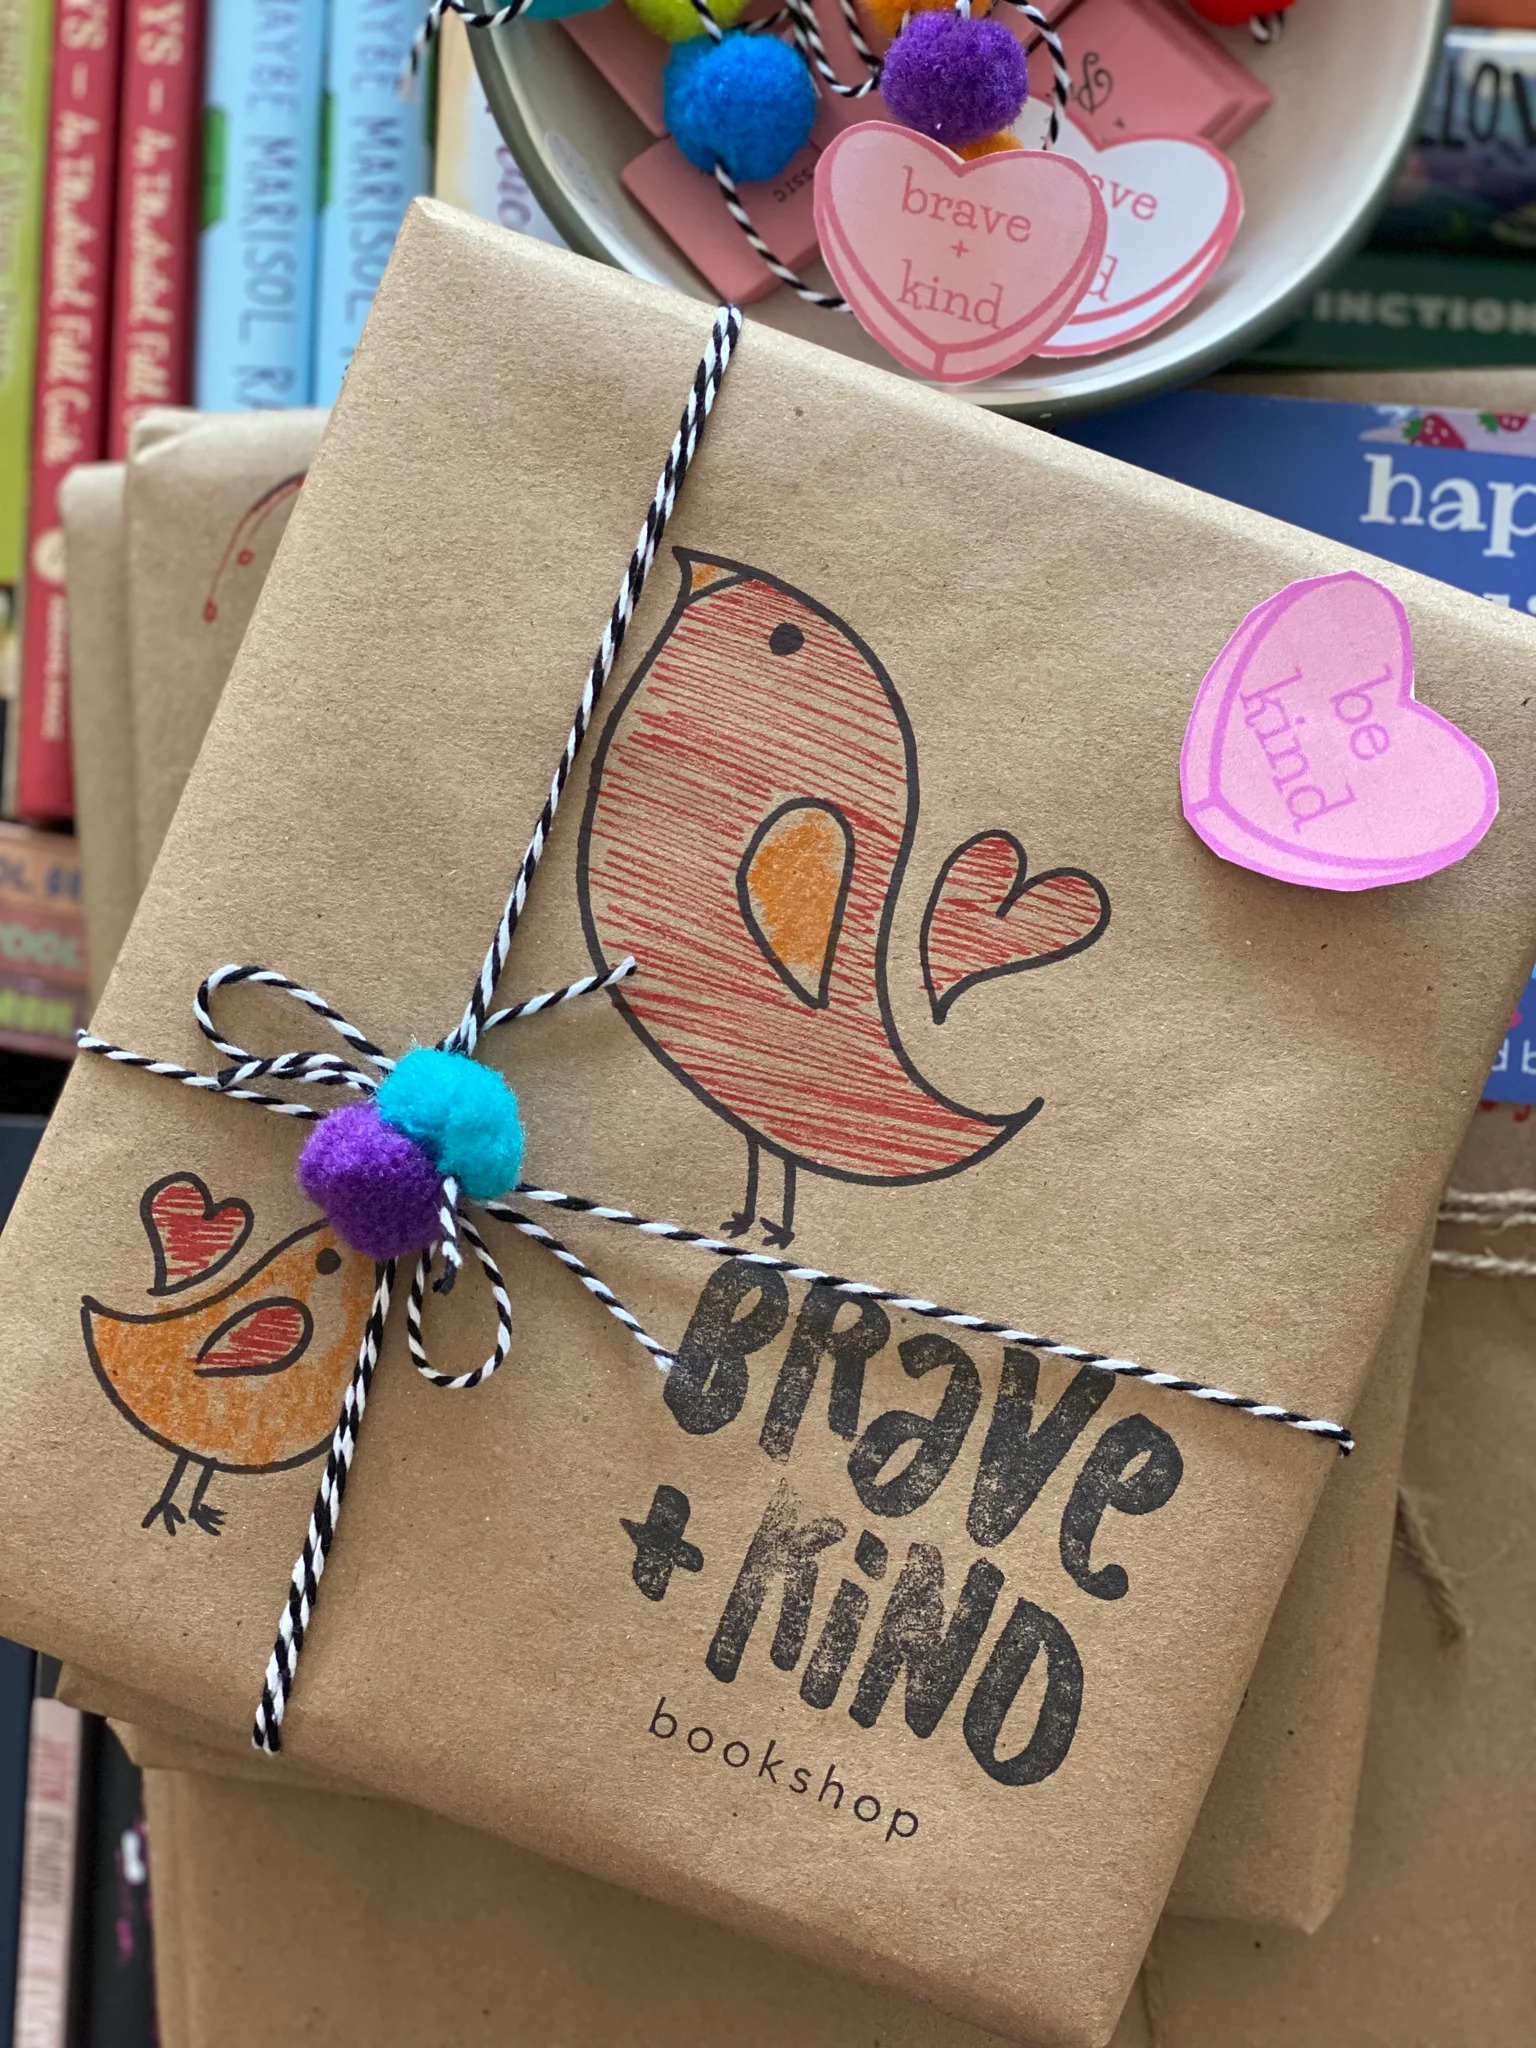 Brave + Kind Bookshop